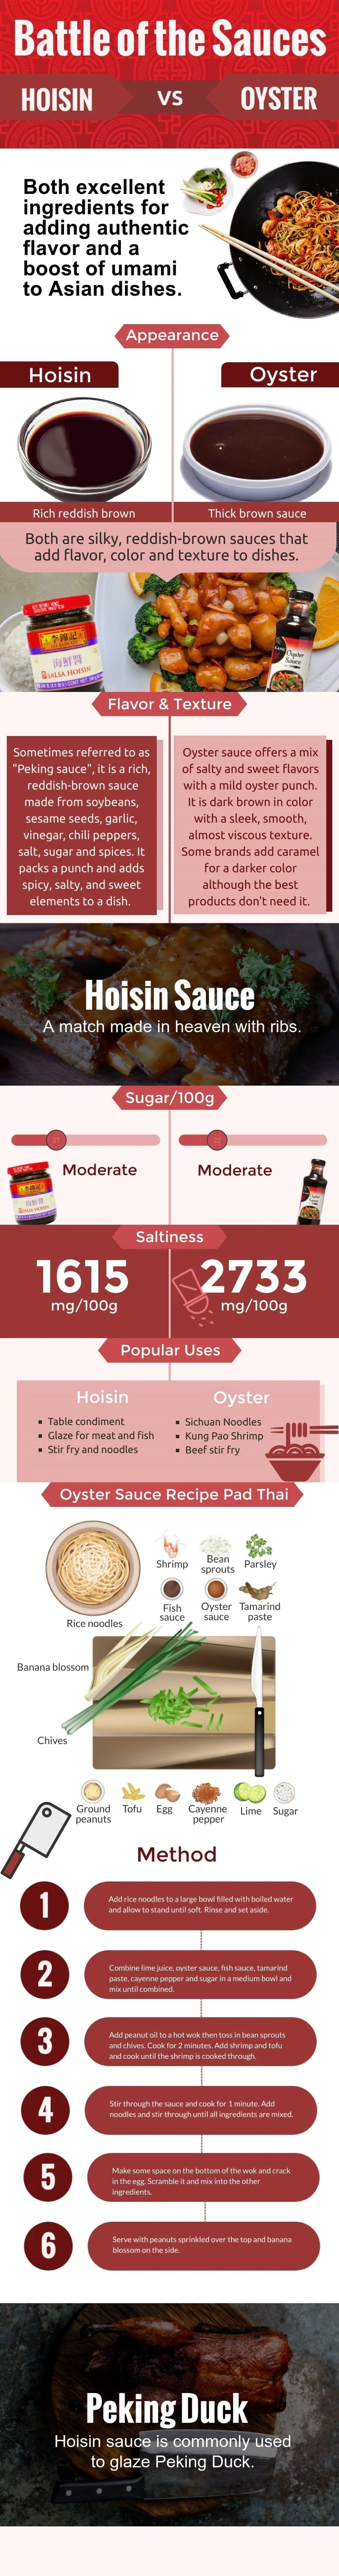 hoisin vs oyster sauce infographic